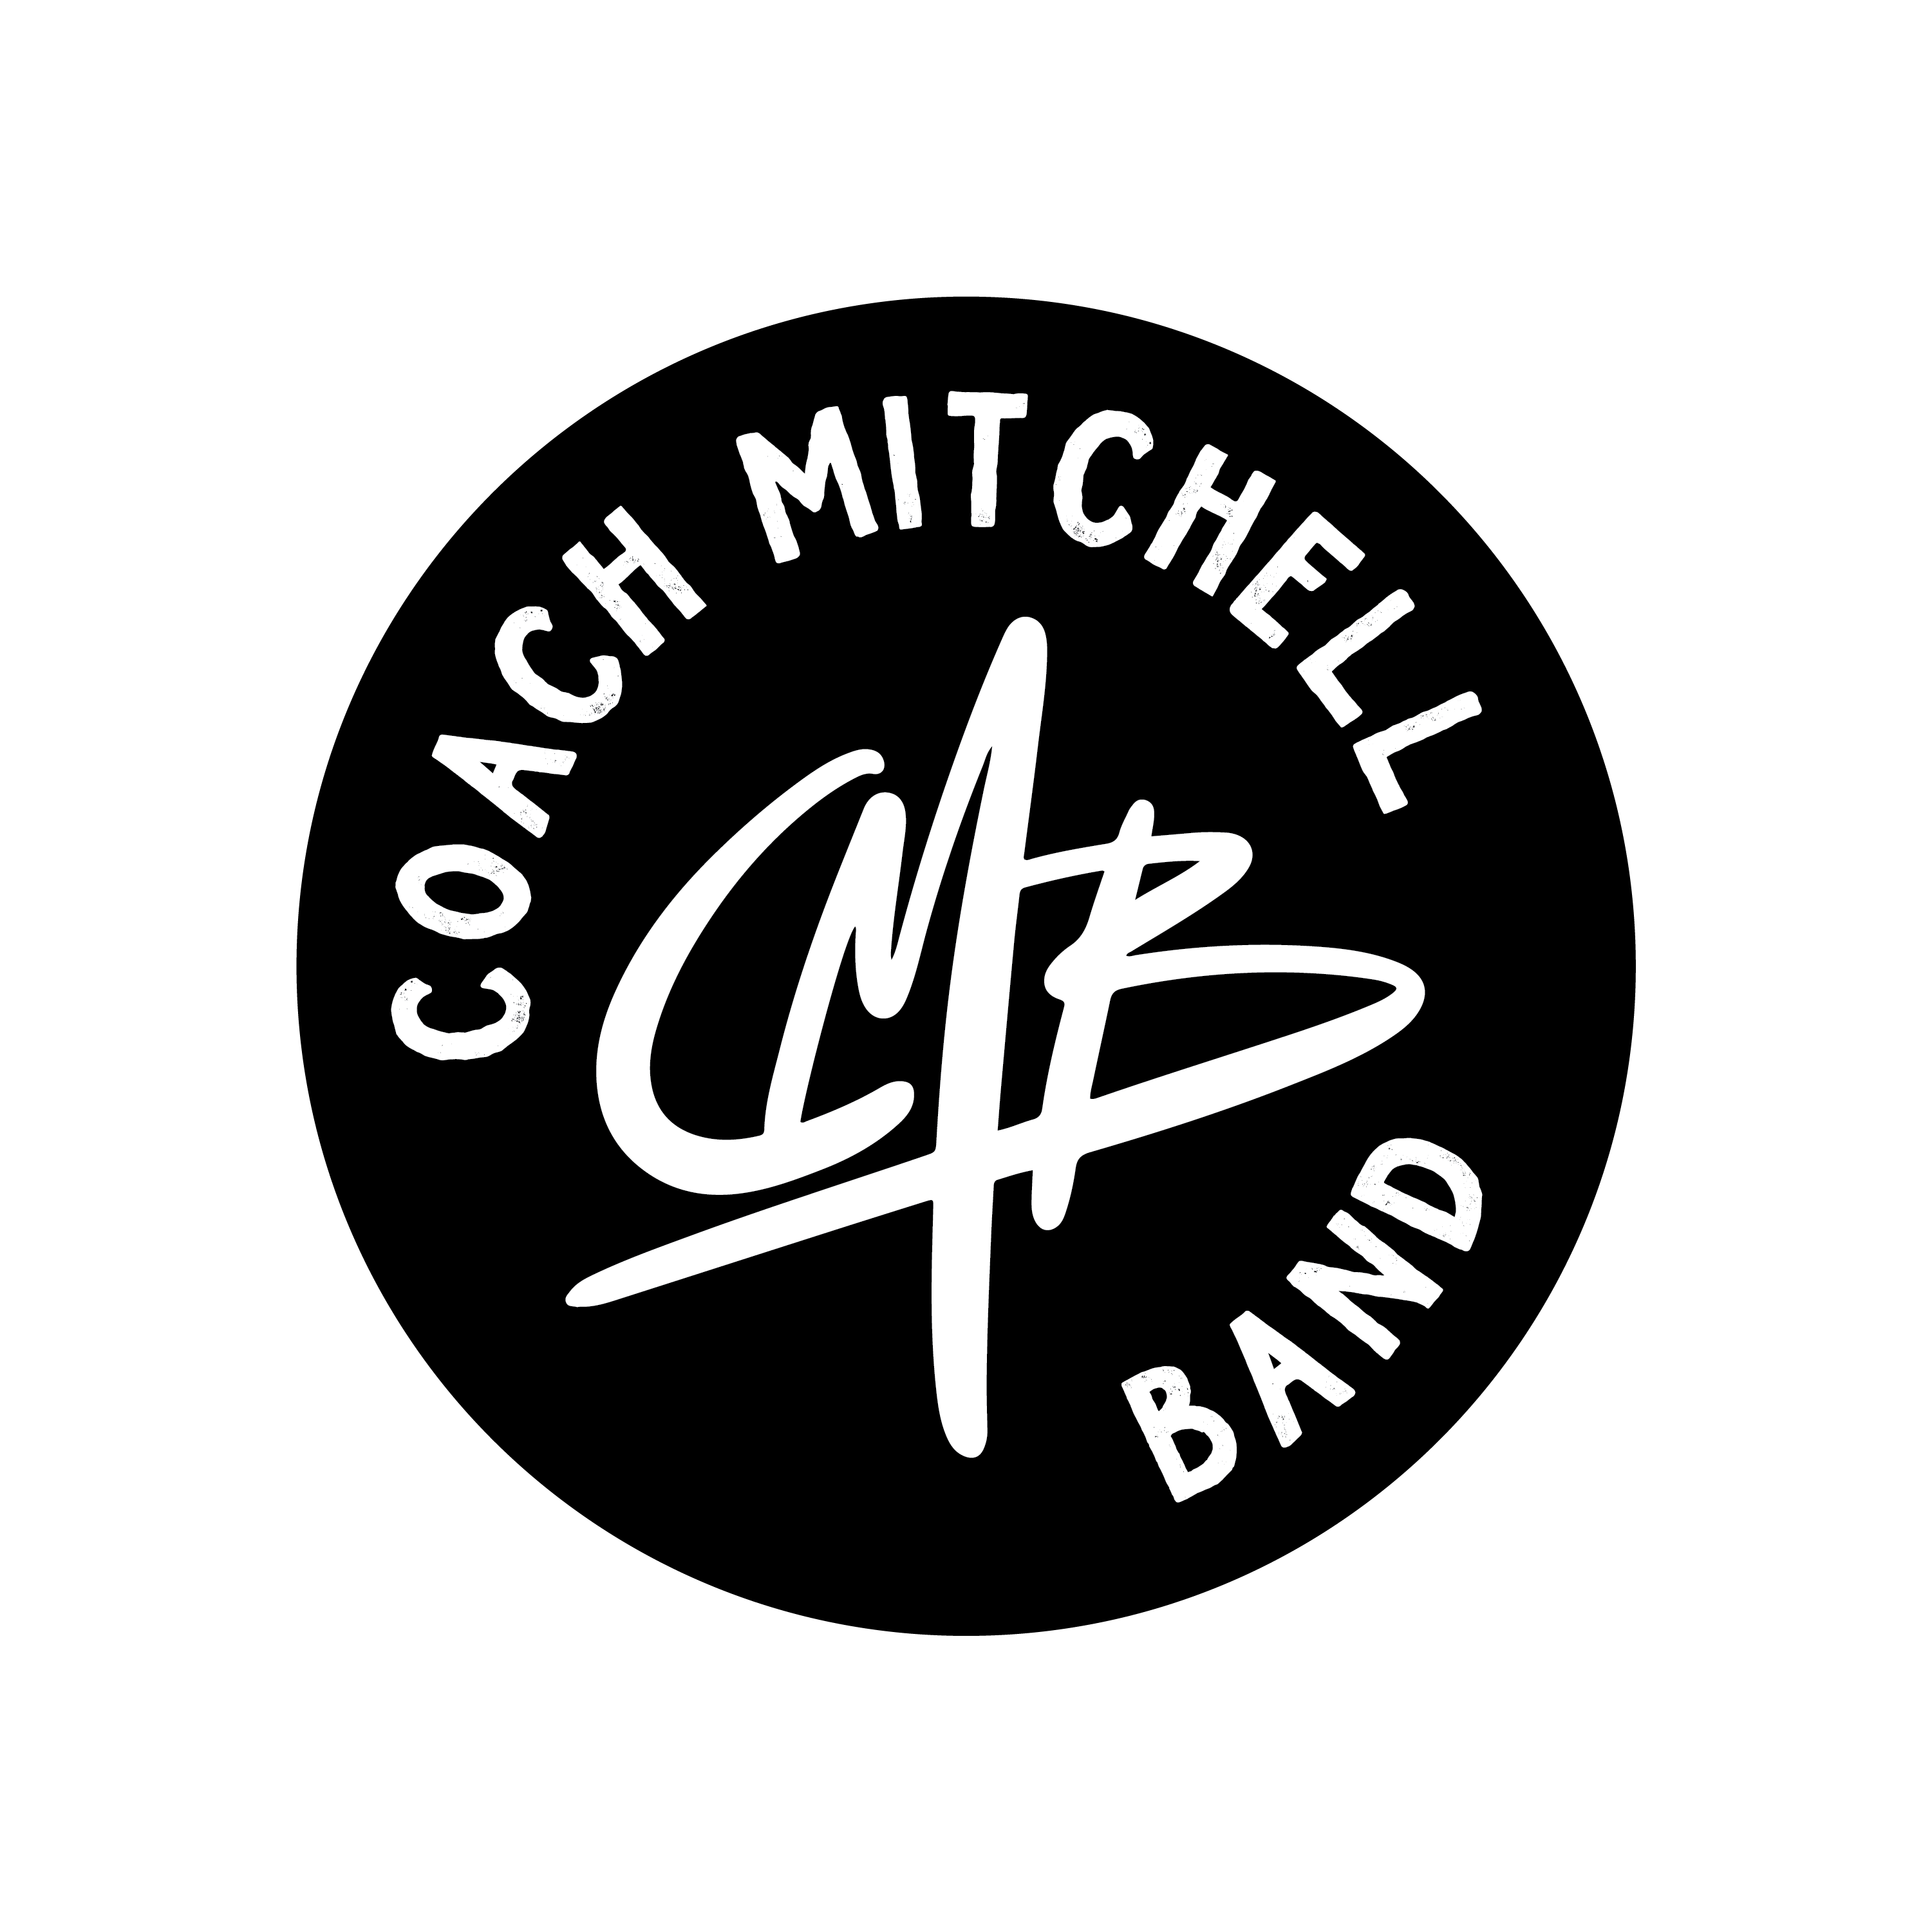 Coach Mitchell Band